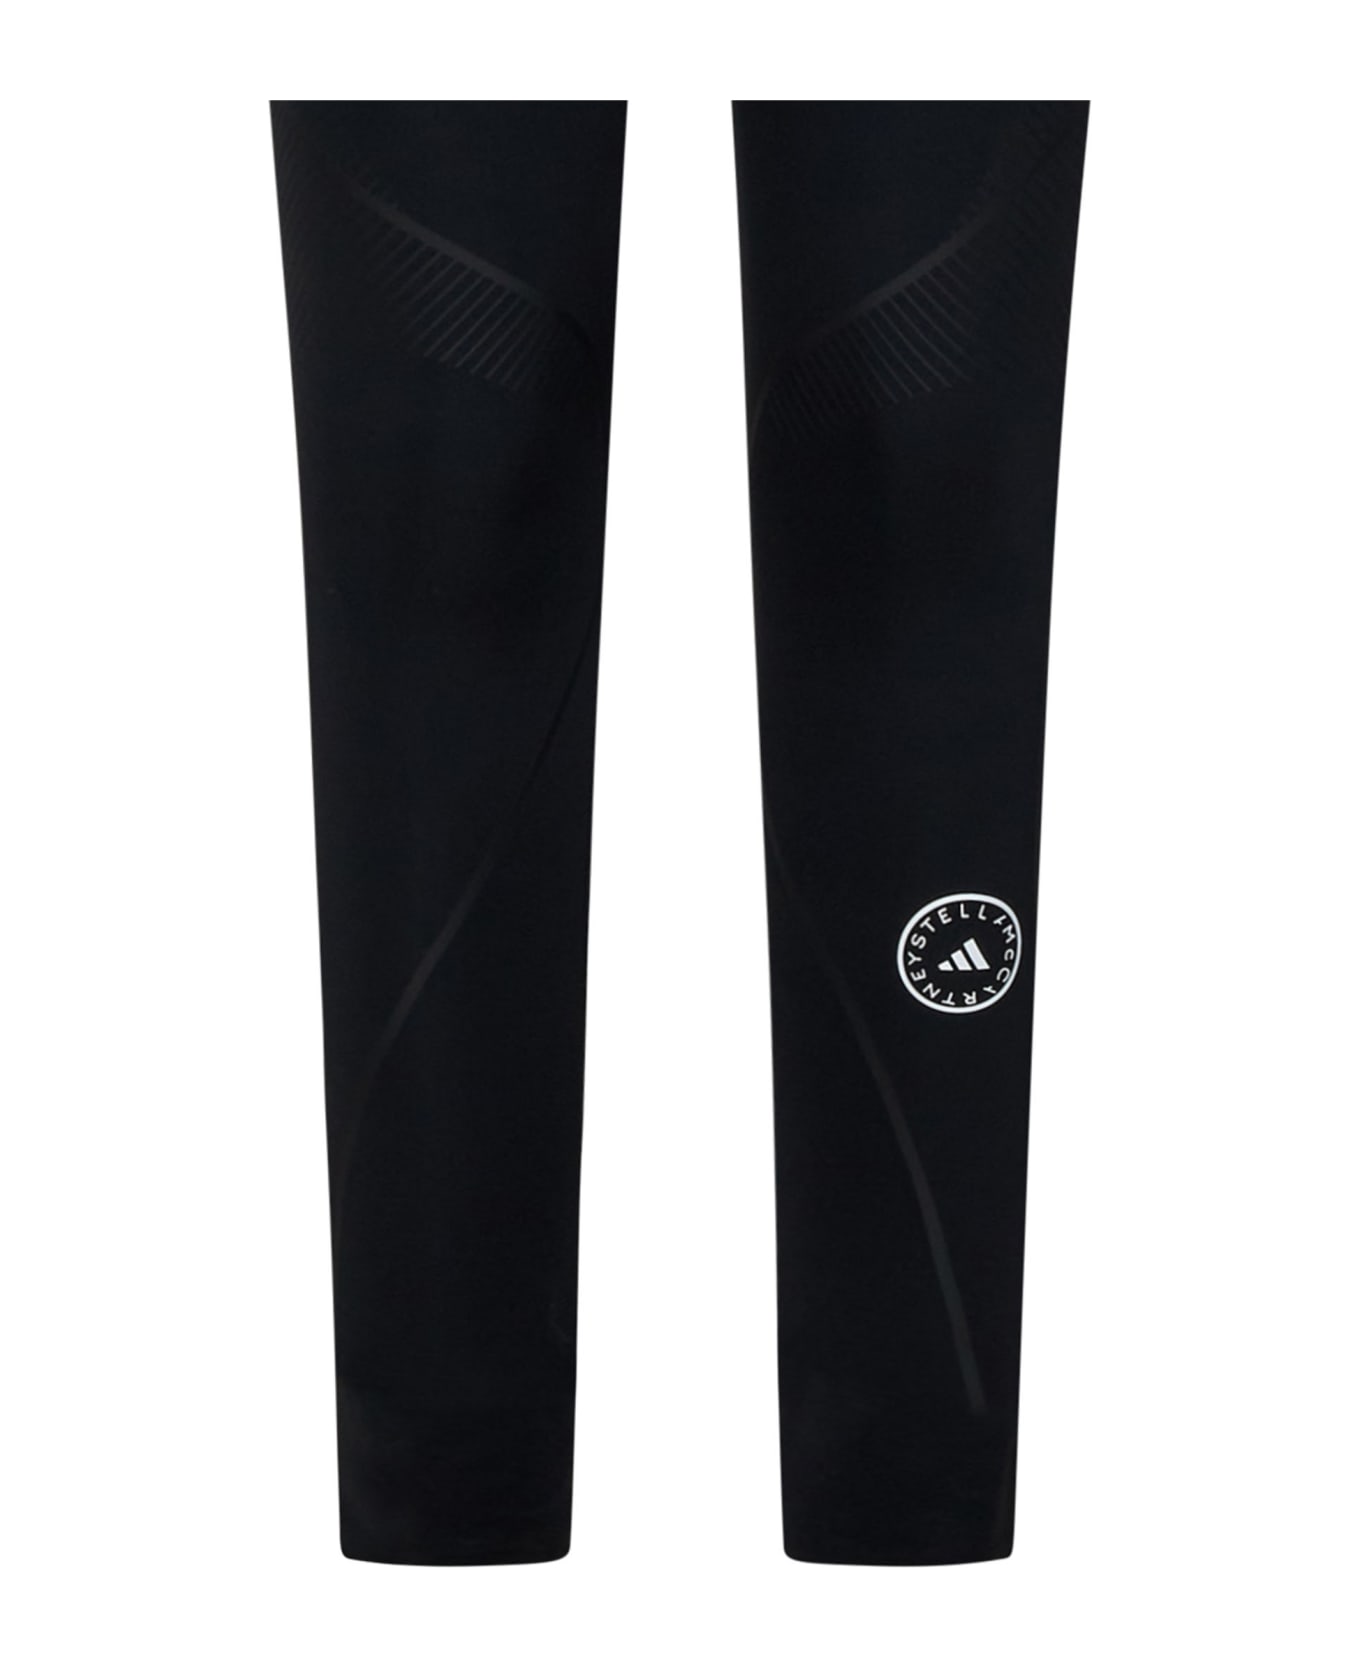 Adidas by Stella McCartney Leggings - Black